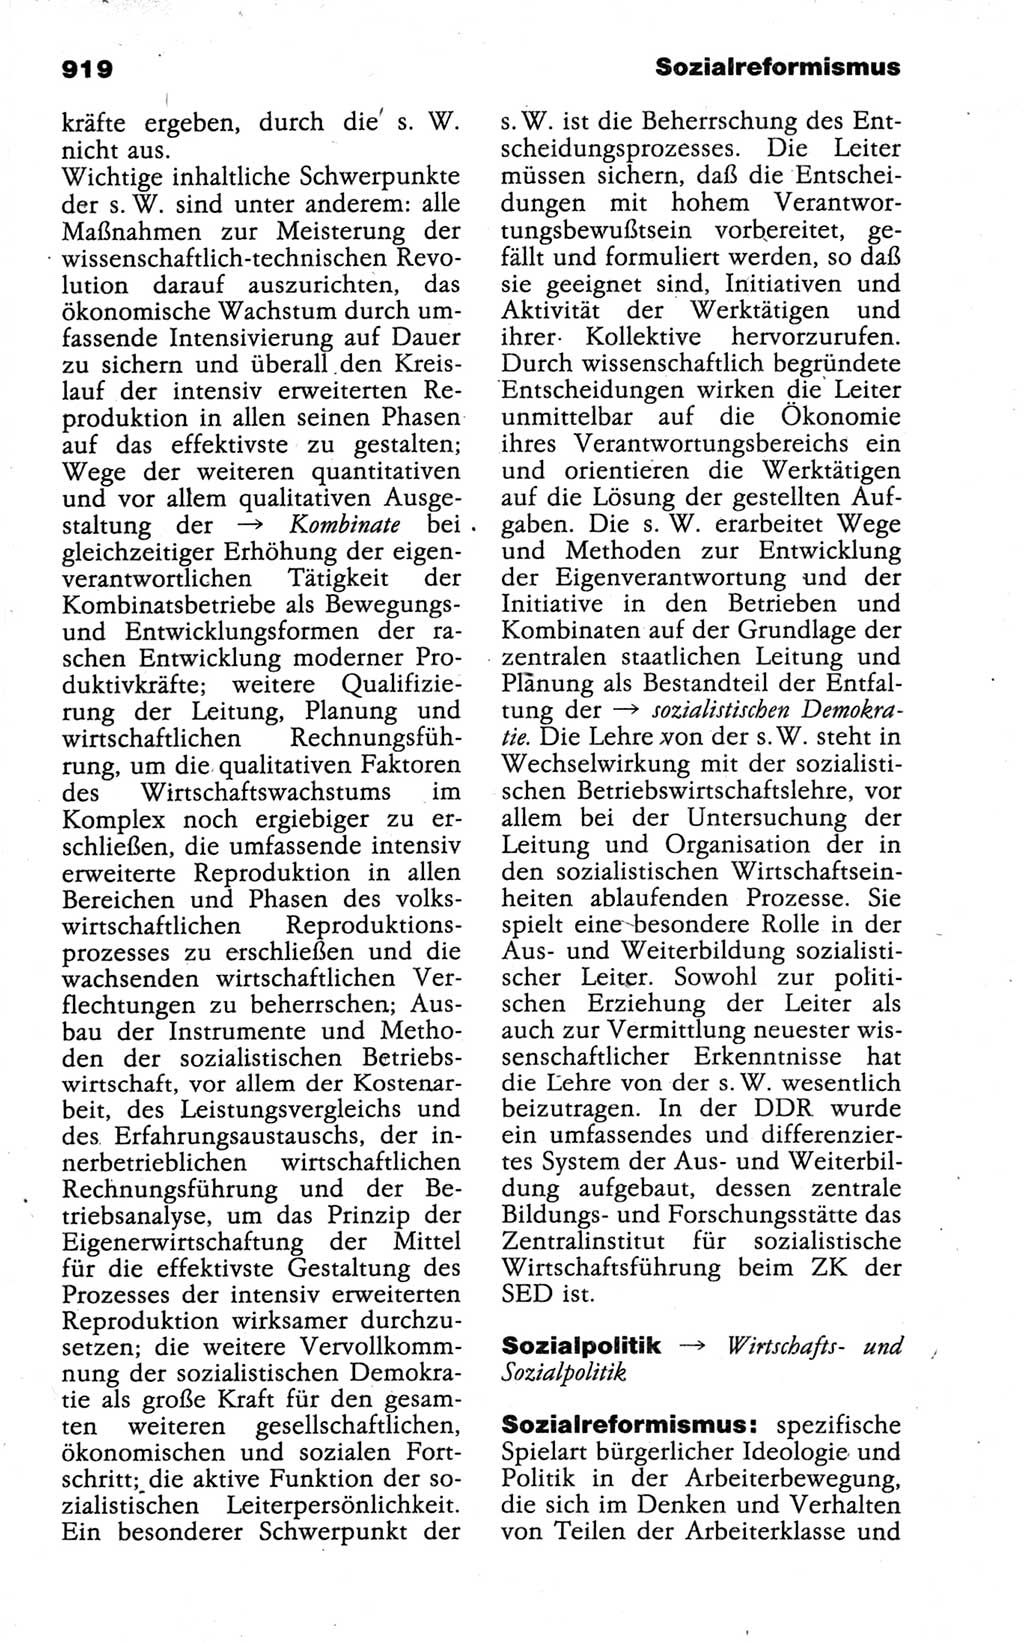 Kleines politisches Wörterbuch [Deutsche Demokratische Republik (DDR)] 1988, Seite 919 (Kl. pol. Wb. DDR 1988, S. 919)